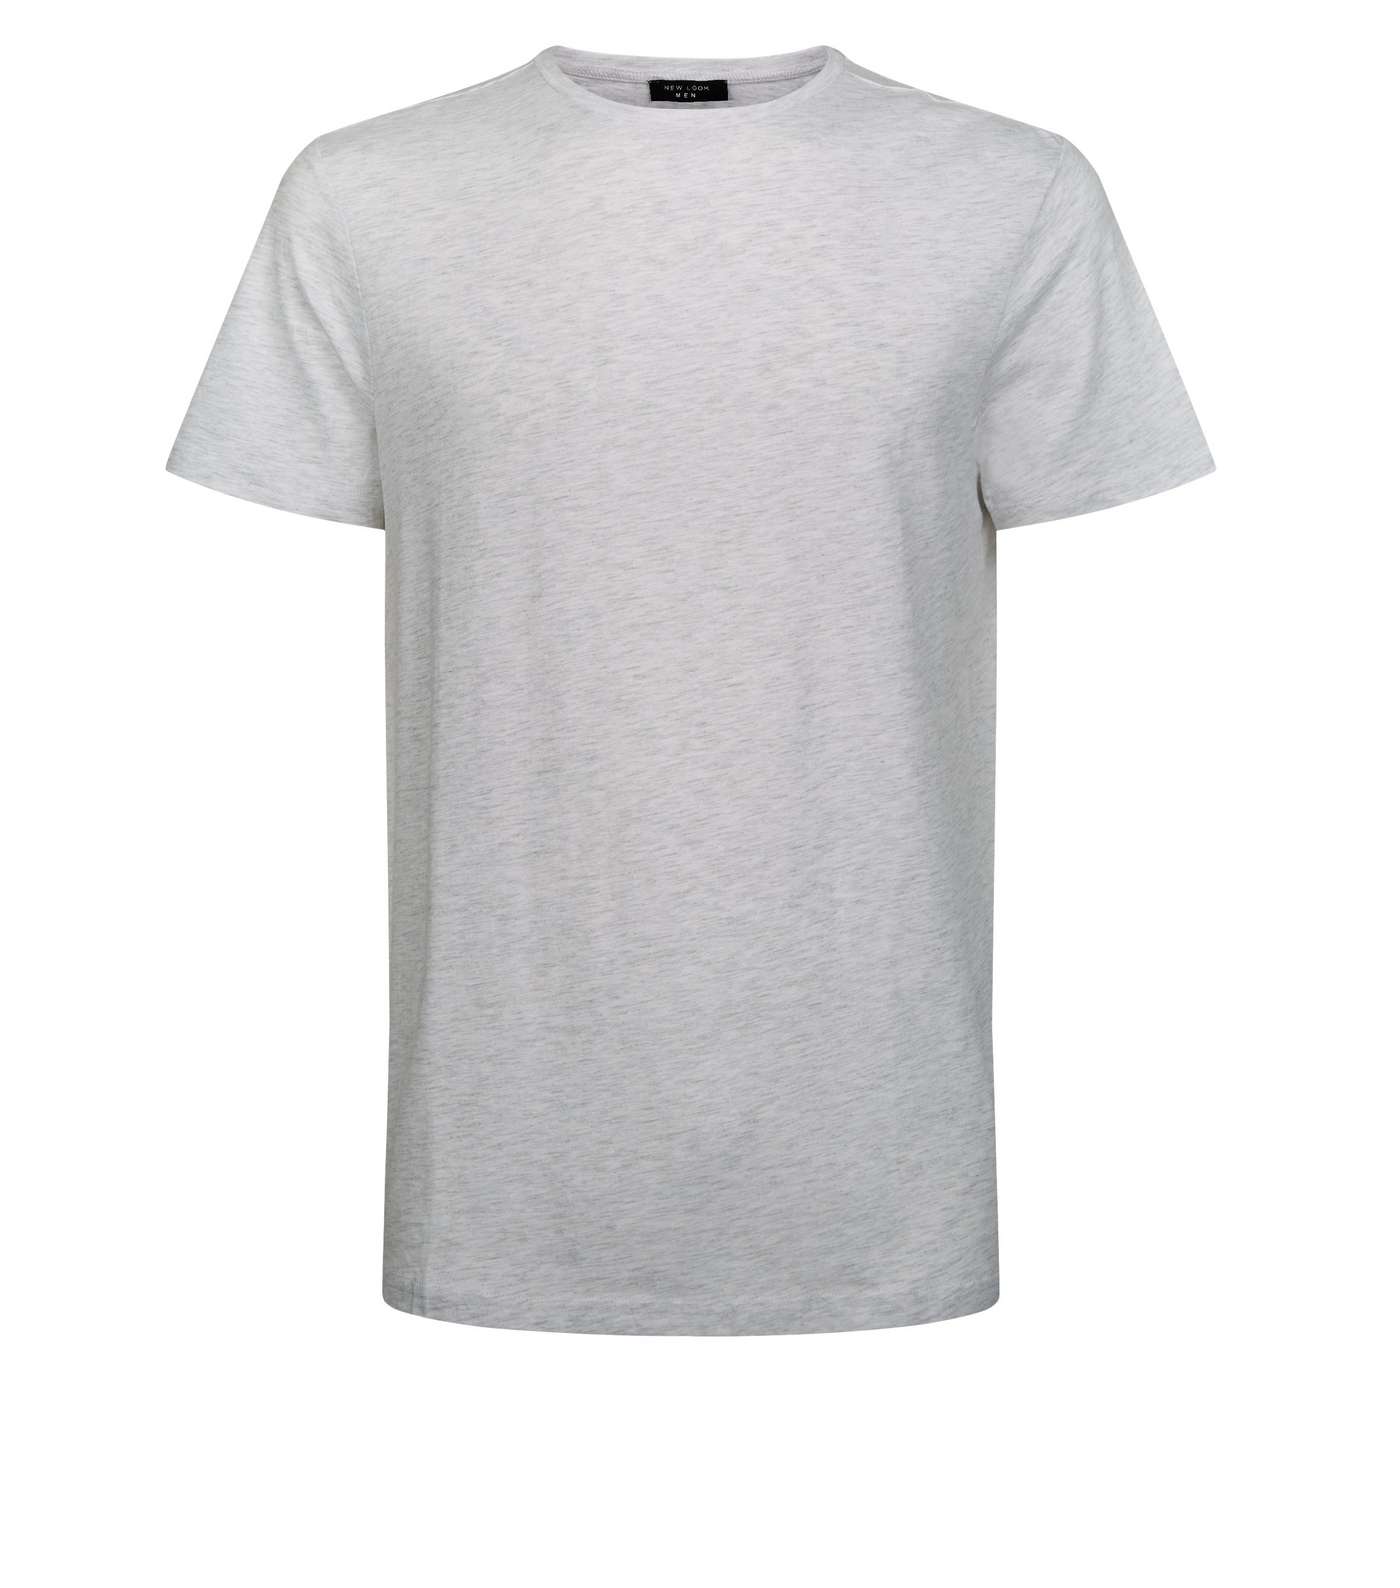 Pale Grey Crew Neck Cotton T-Shirt Image 4